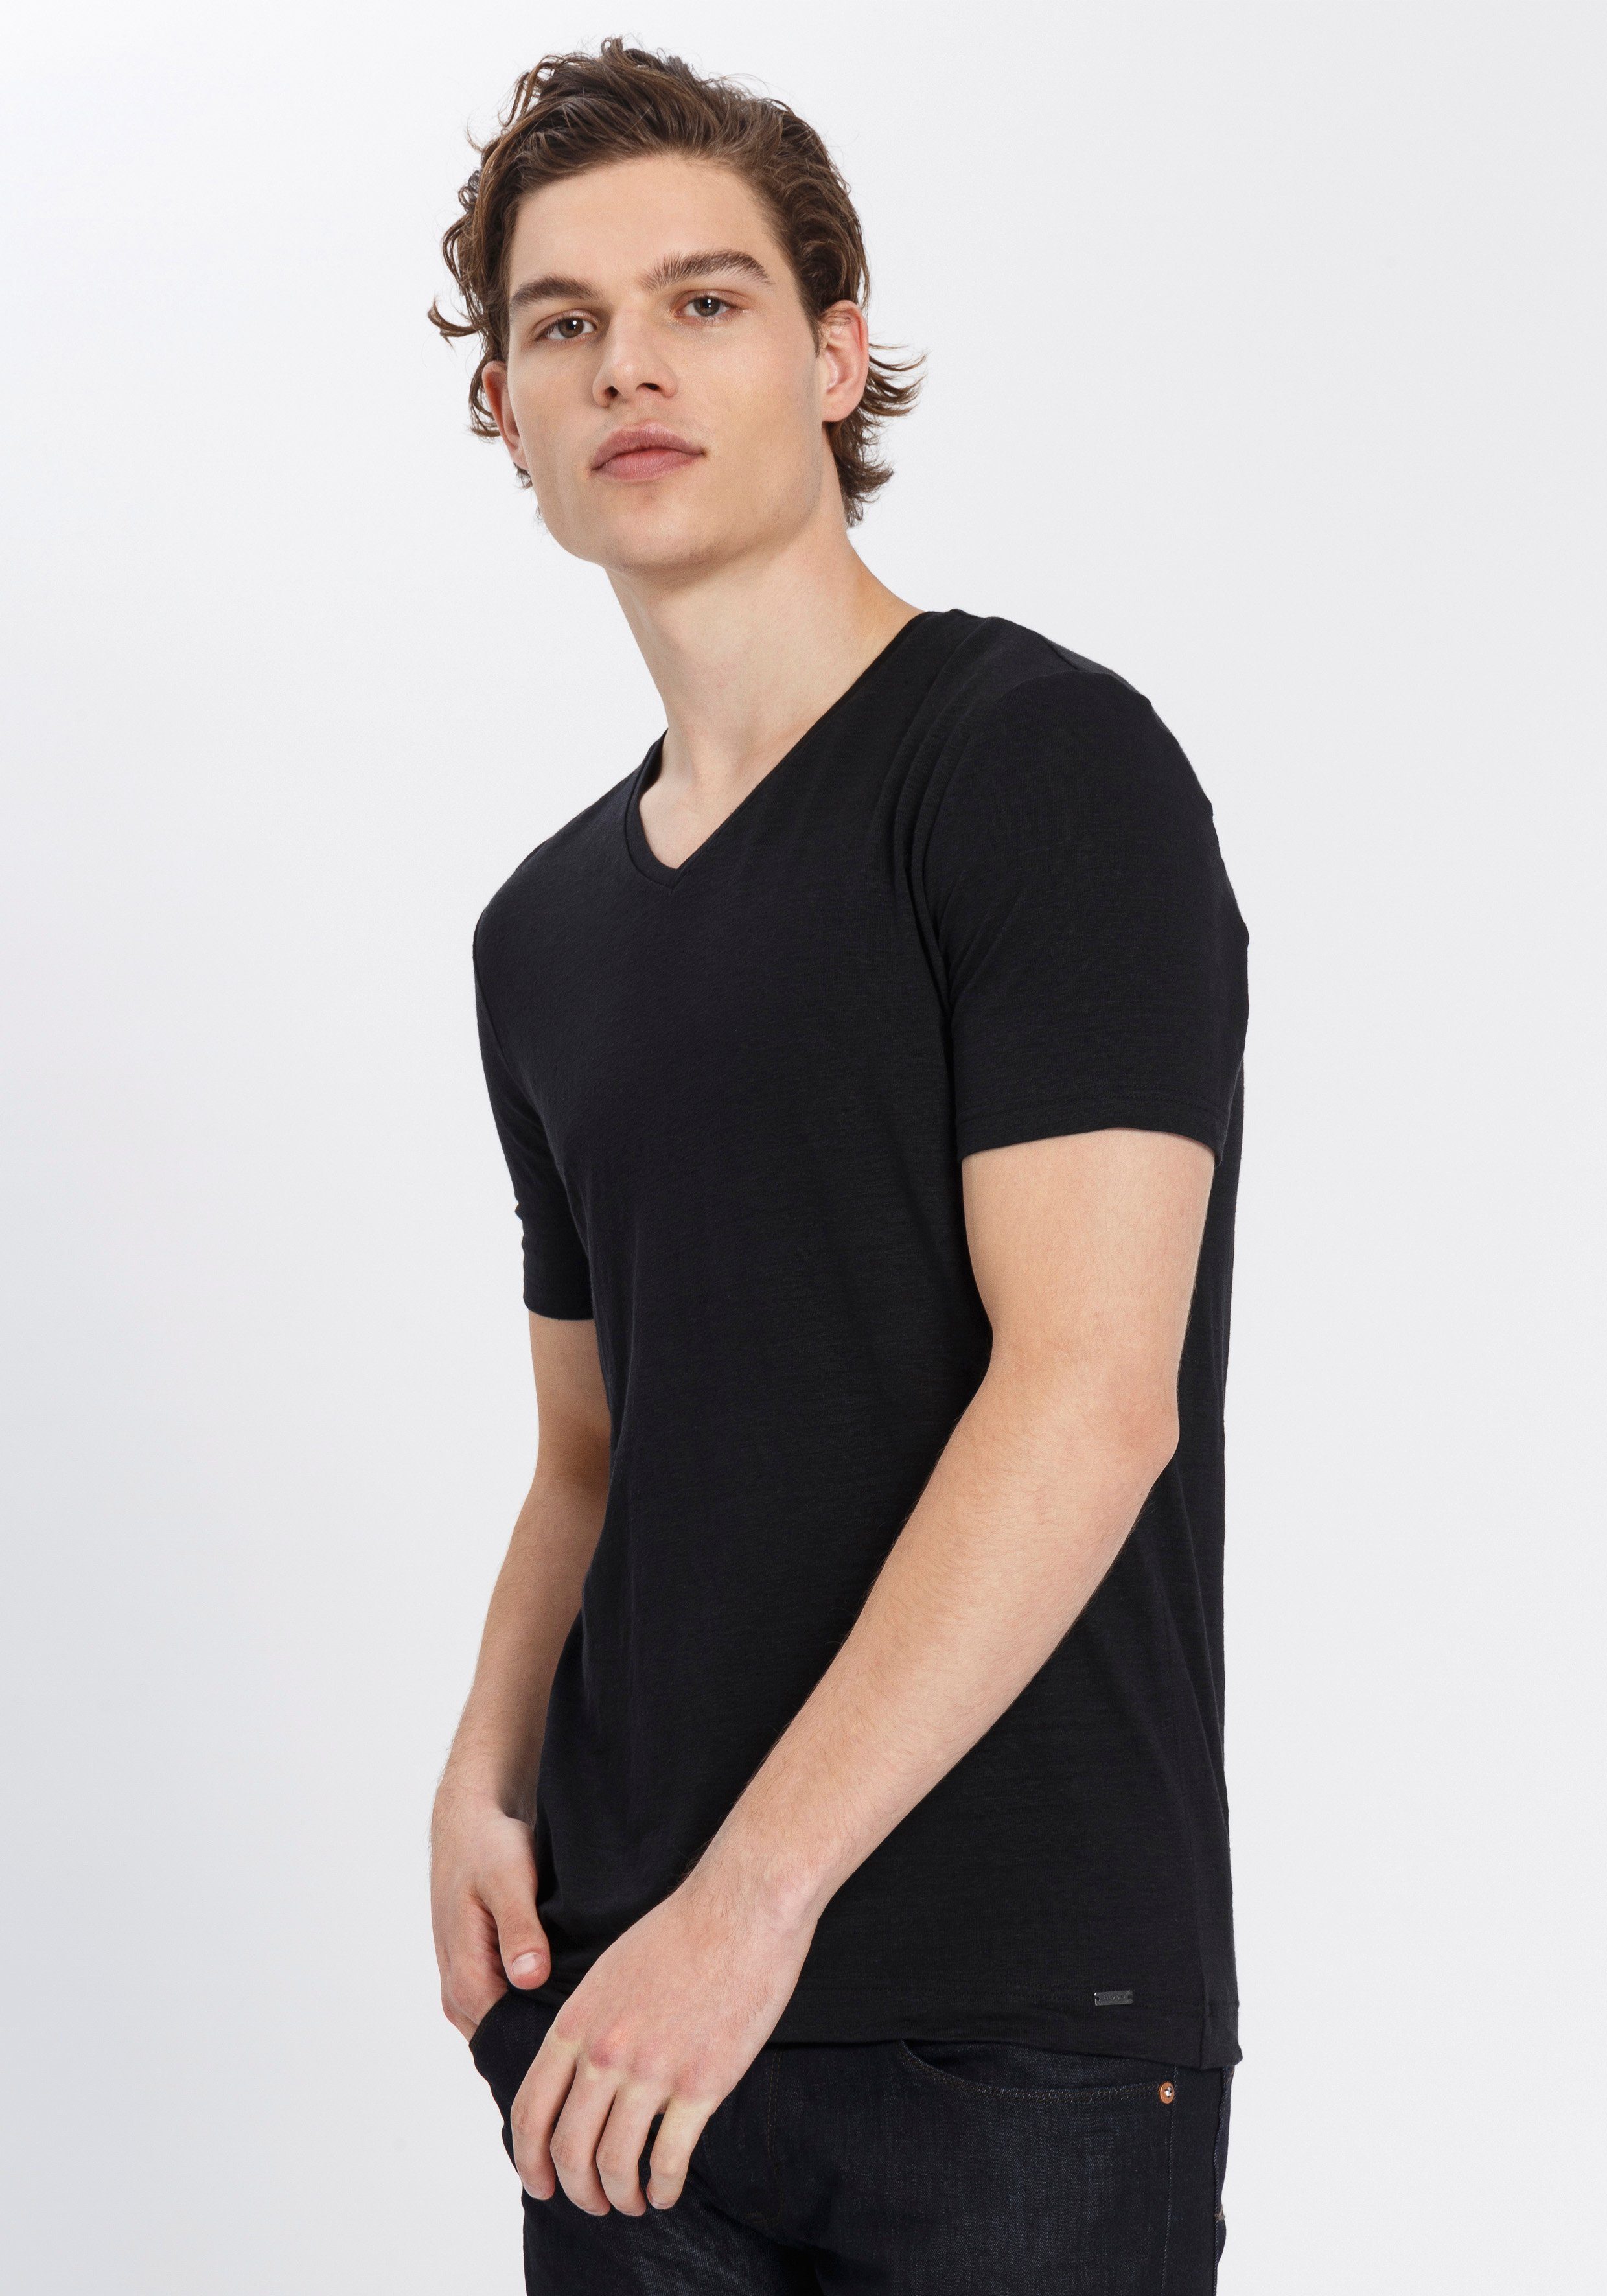 Leinenanteil mit schwarz Level T-Shirt hohem OLYMP body Five fit